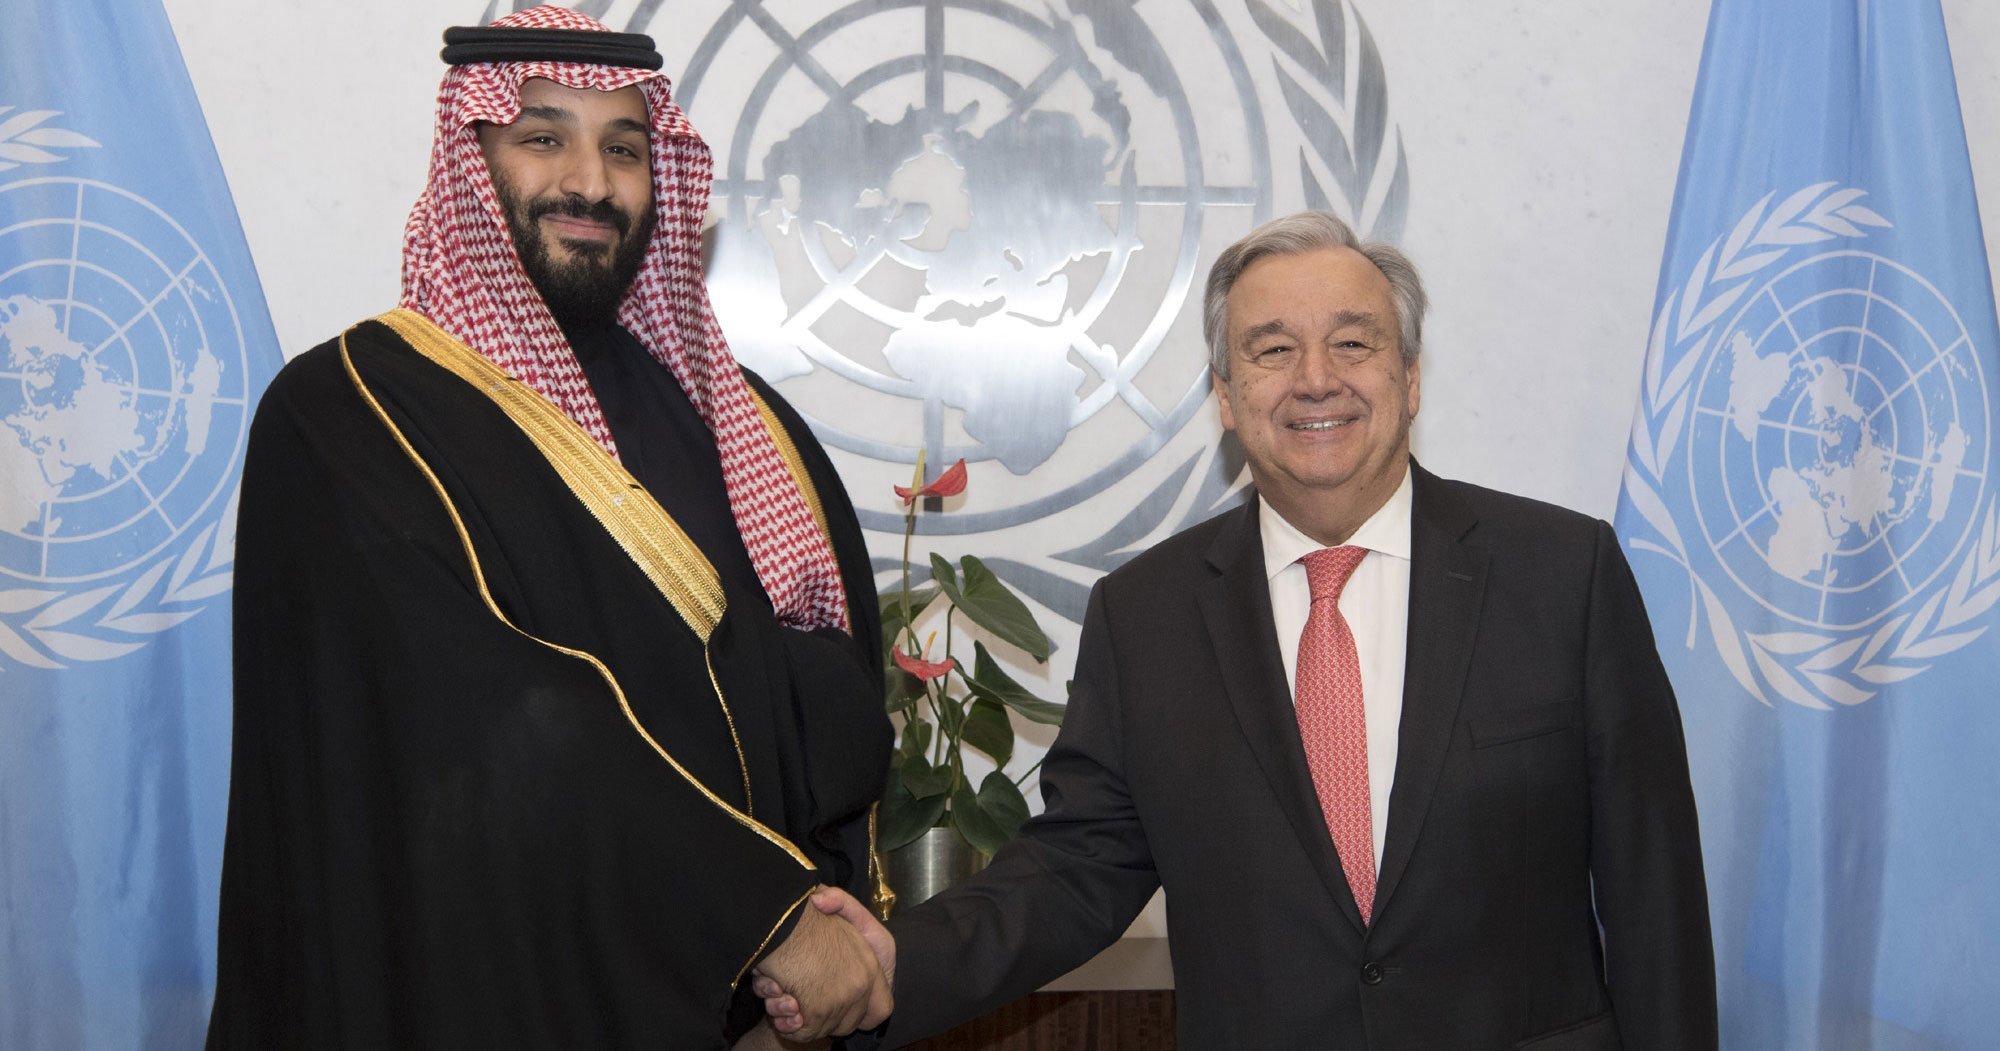  Le Secrétaire Général Antonio Guterres rencontre le Prince Mohammed bin Salman Al Saoud, Prince héritier du Royaume d'Arabie Saoudite (archives).